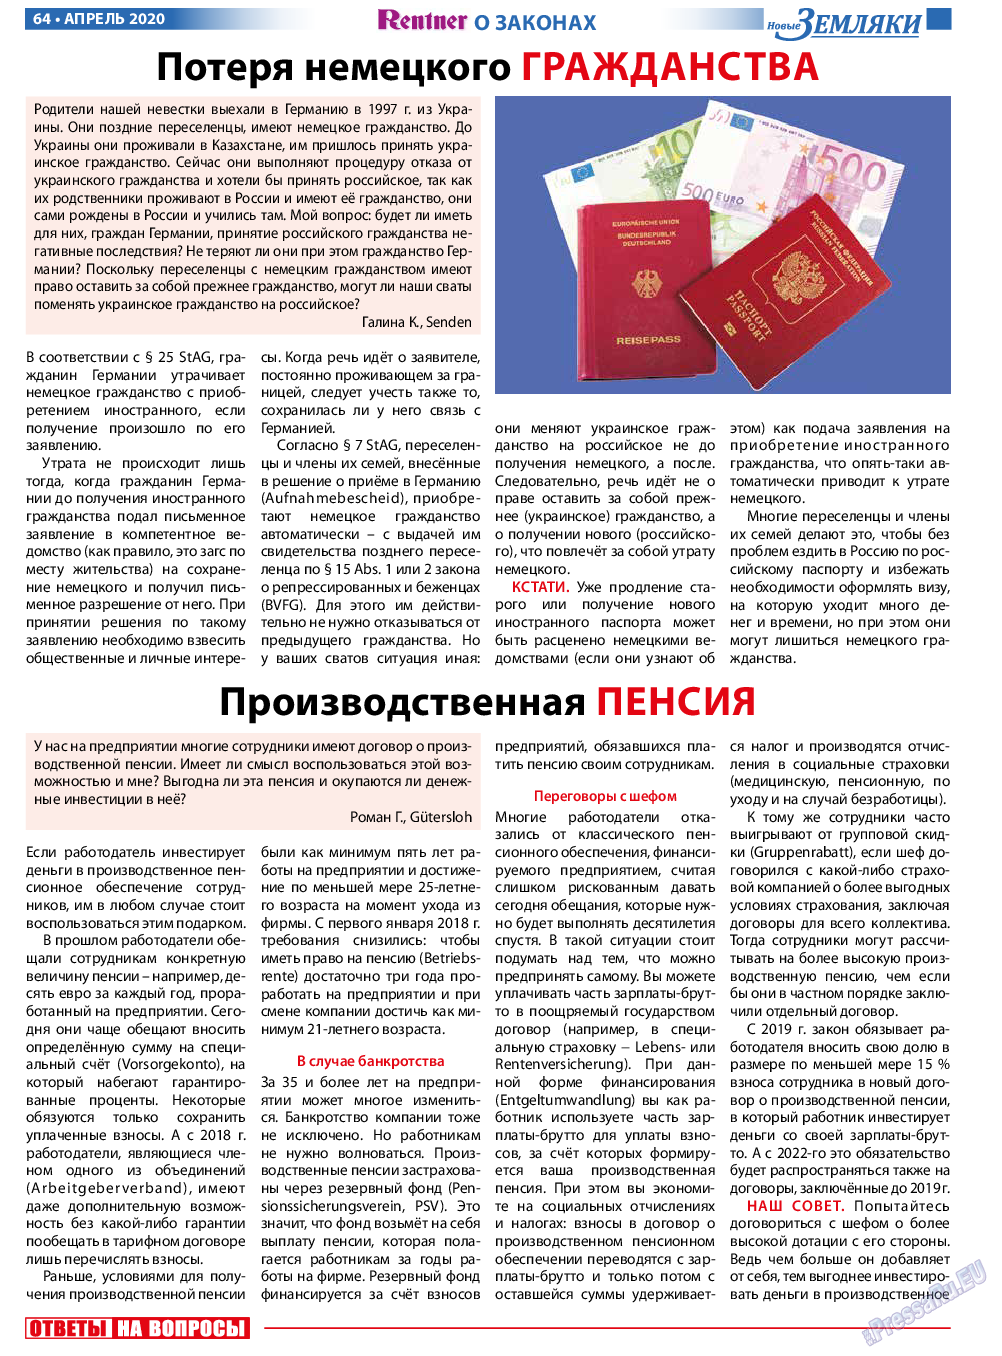 Новые Земляки, газета. 2020 №4 стр.64